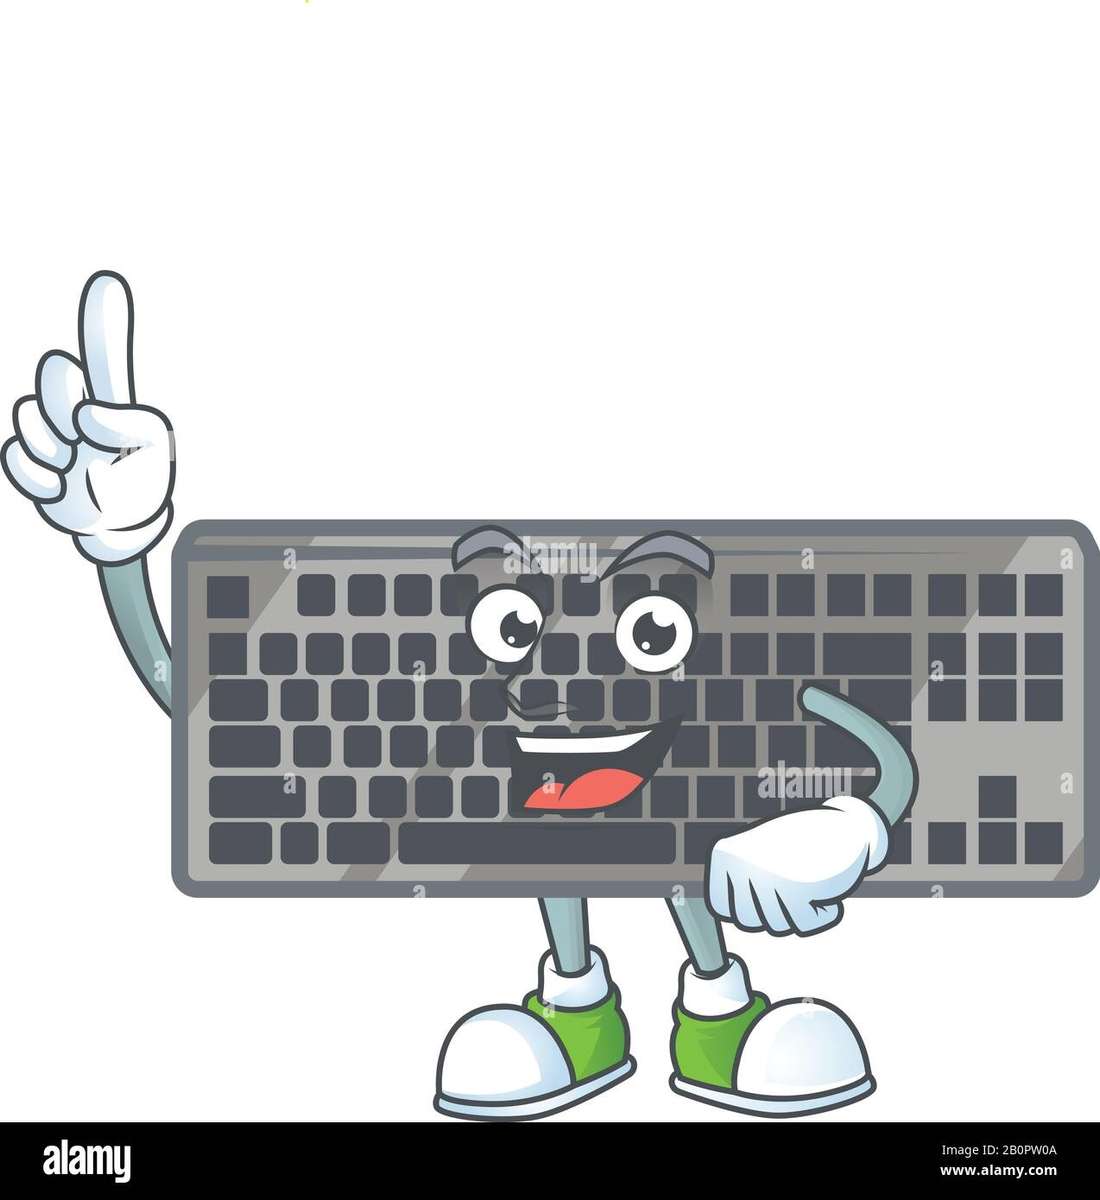 teclado para niños partes de las comptadoras rompecabezas en línea